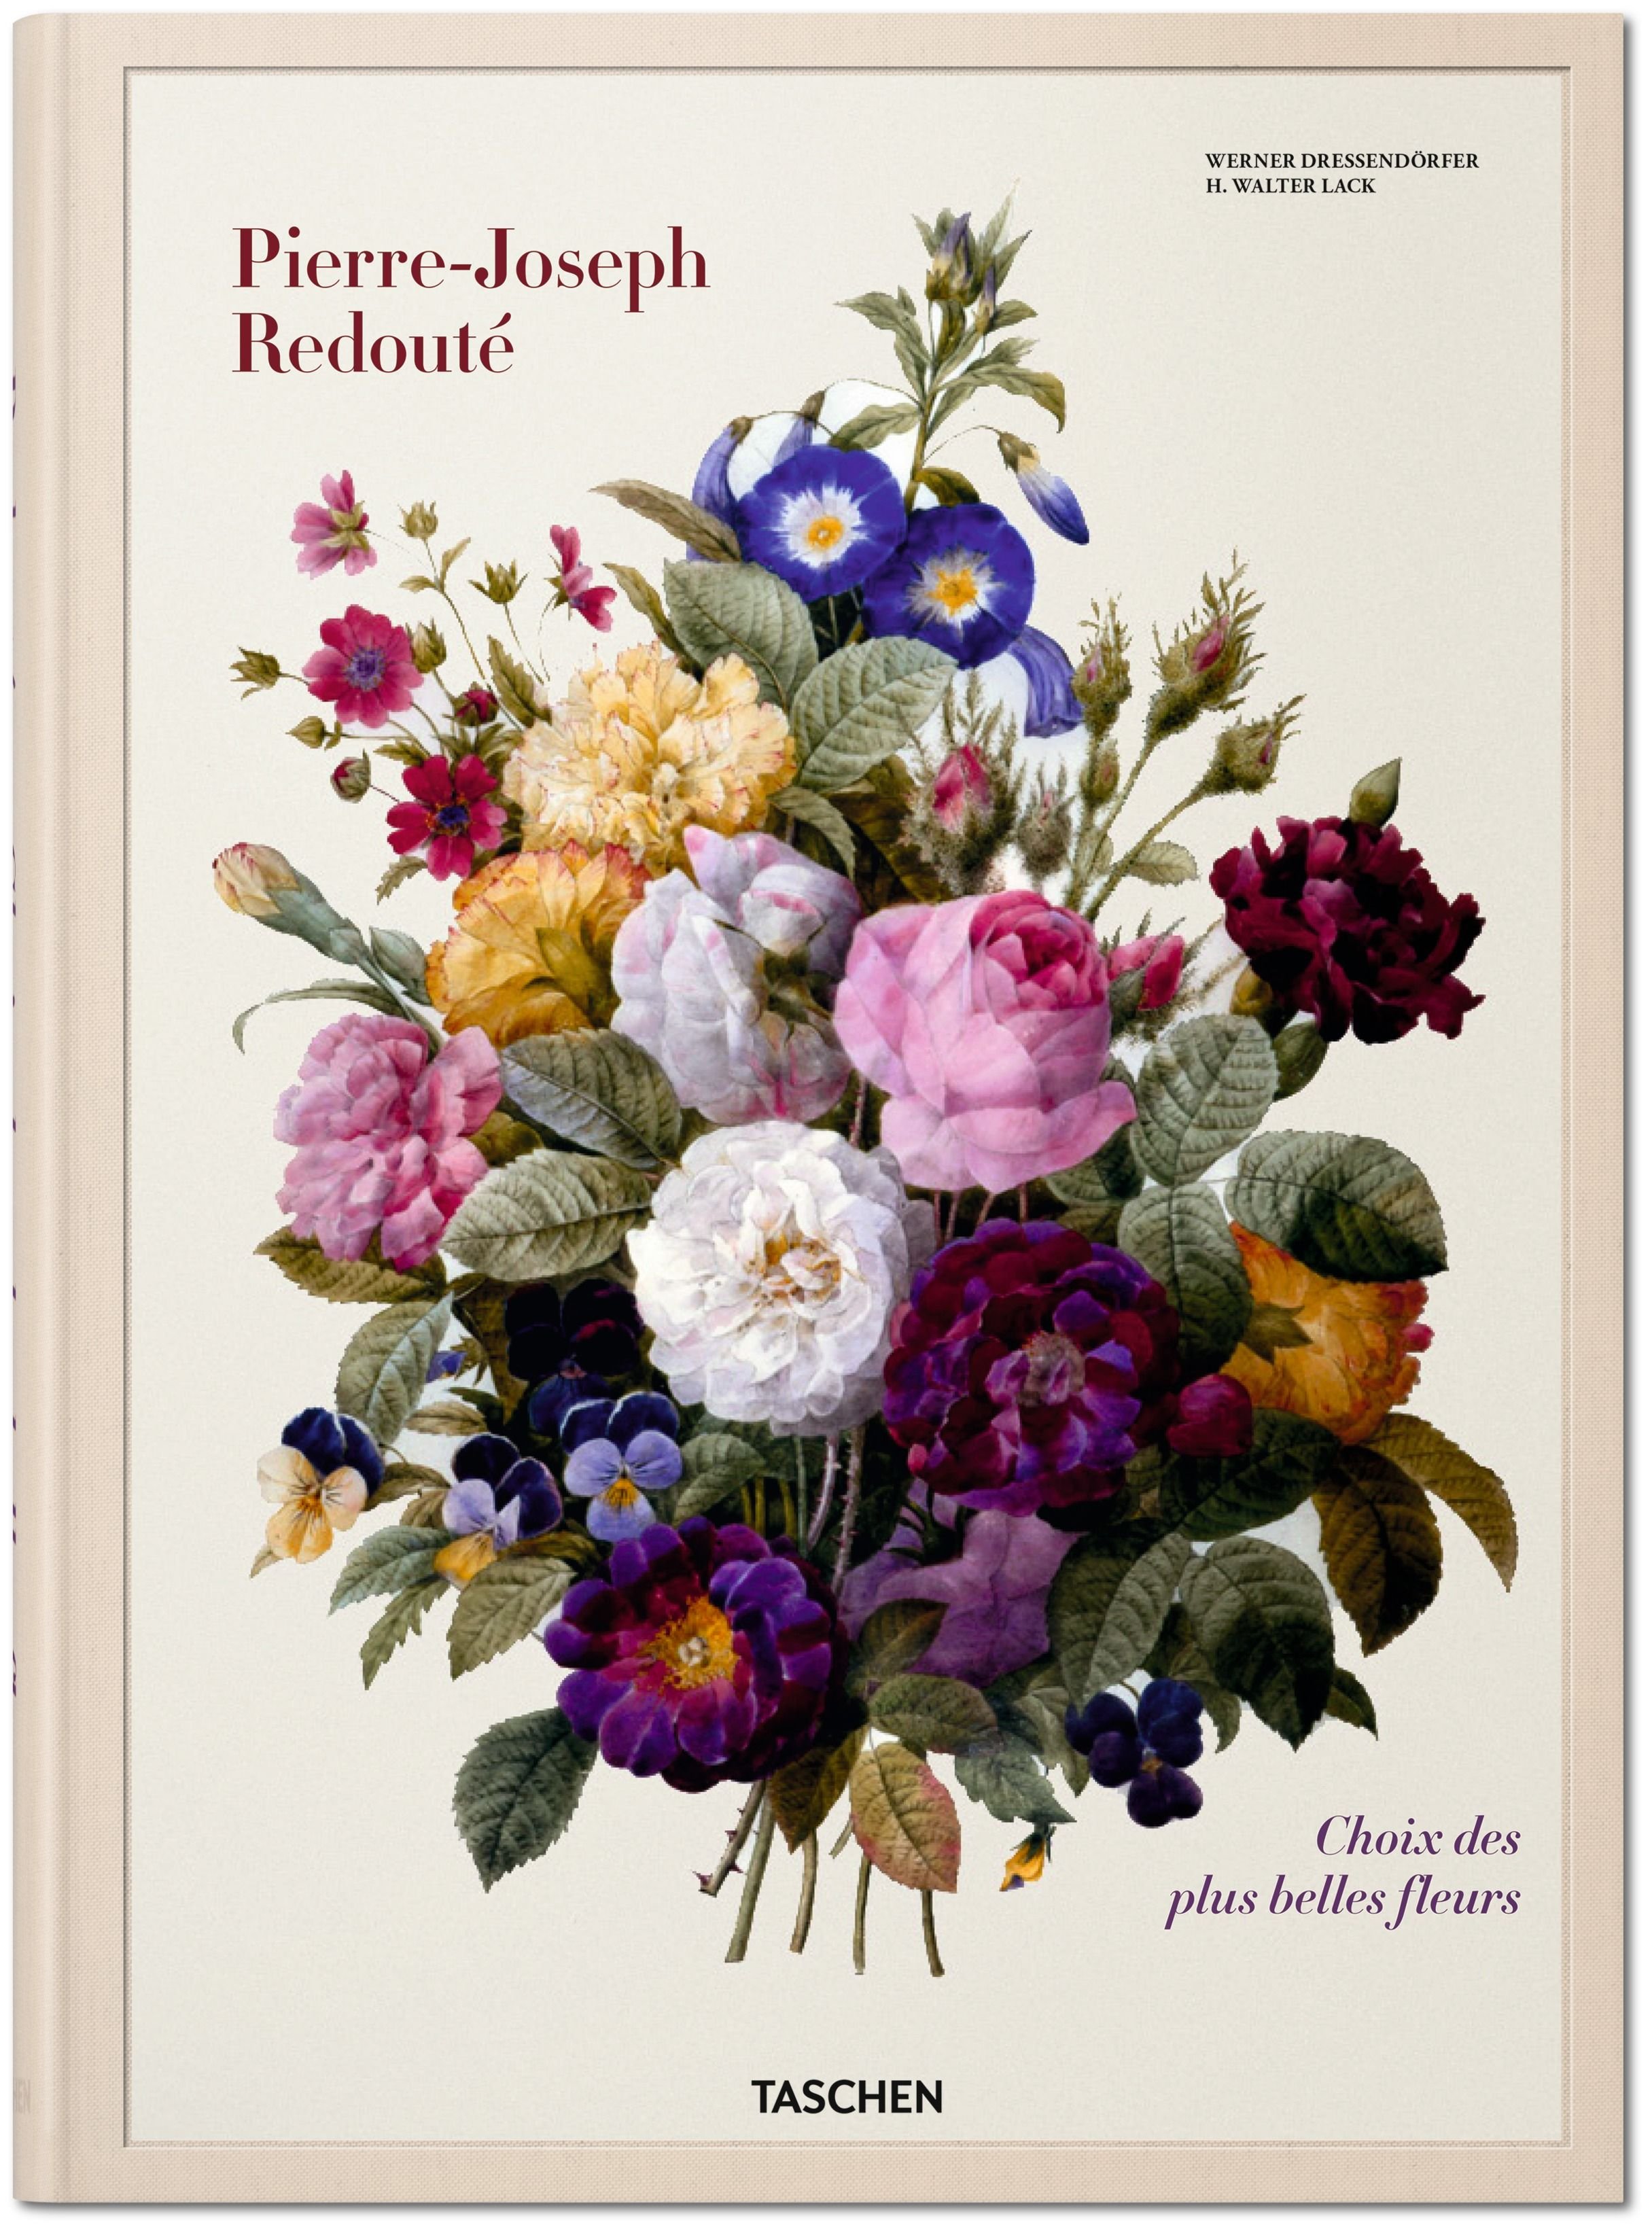 TASCHEN Books: Redouté. The Book of Flowers